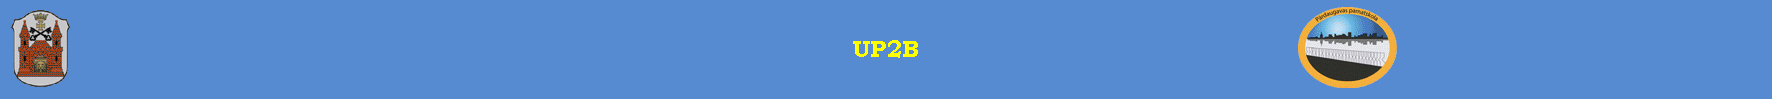 UP2B